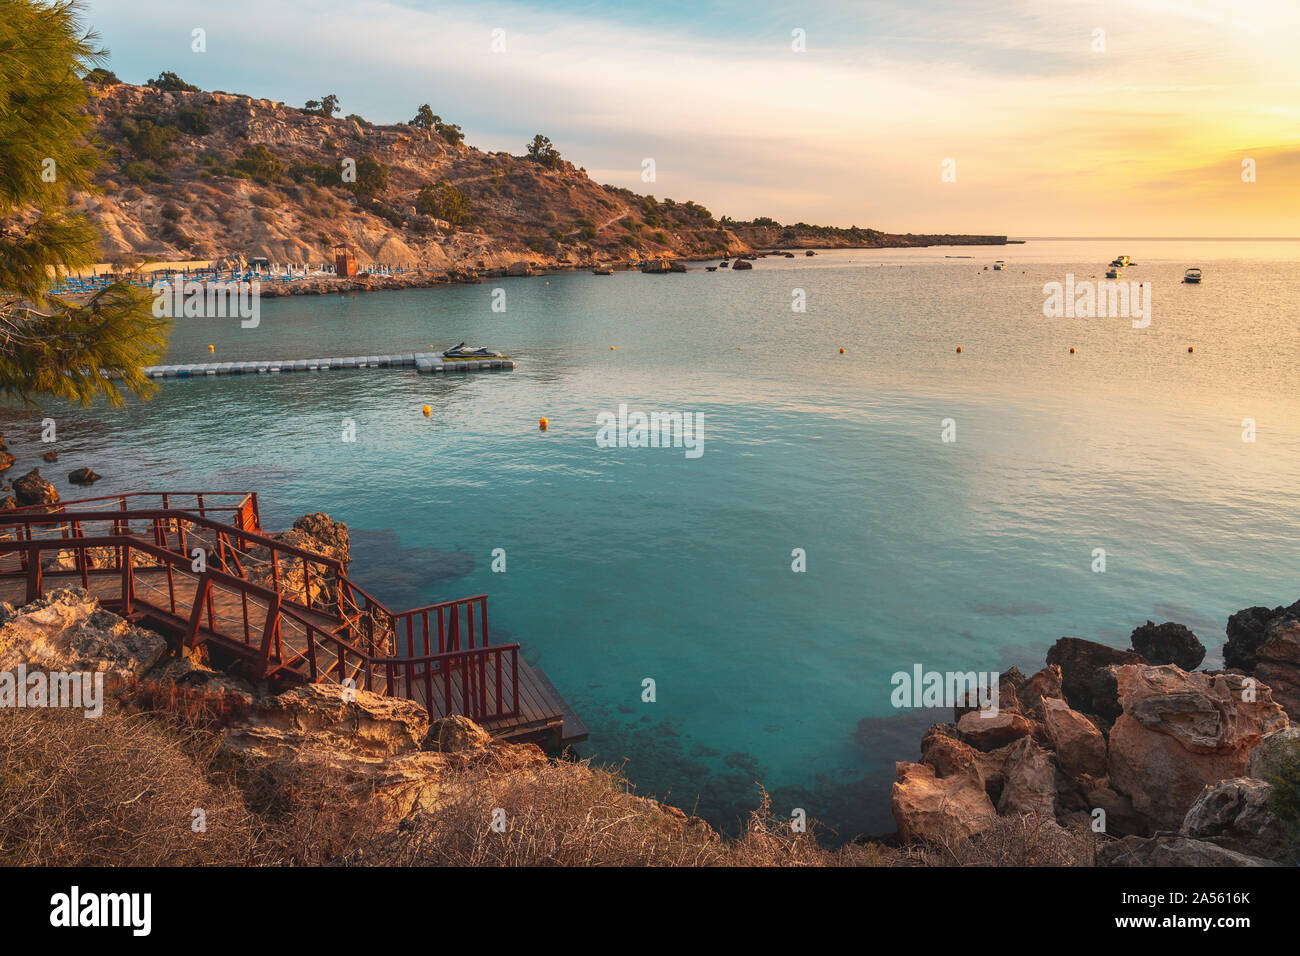 Hermosa playa de Konnos Bay en el parque natural de Cabo Greko, Chipre Foto de stock